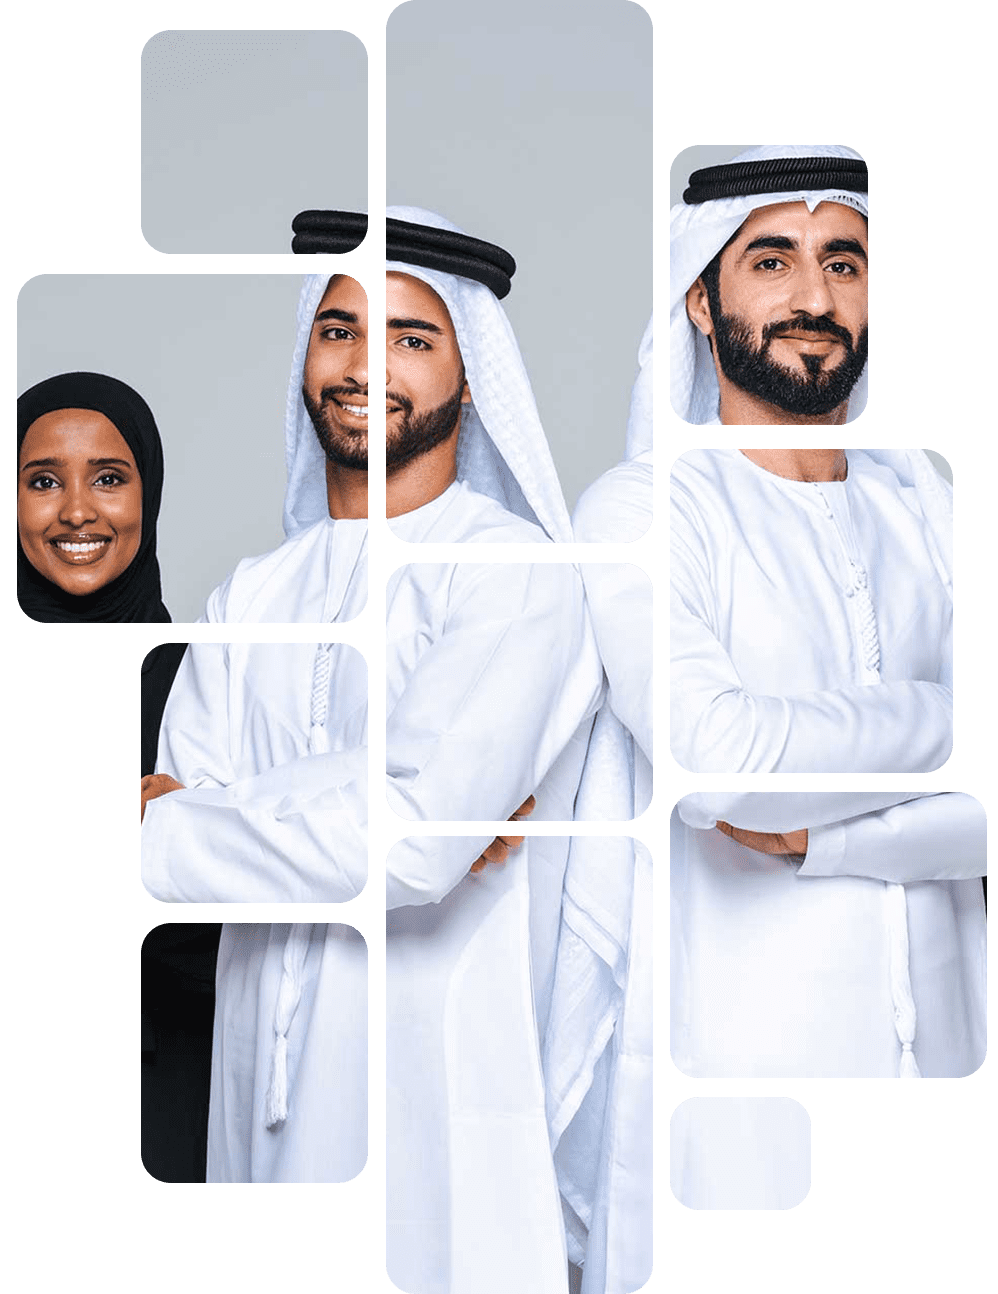 Hire Emiratis in UAE